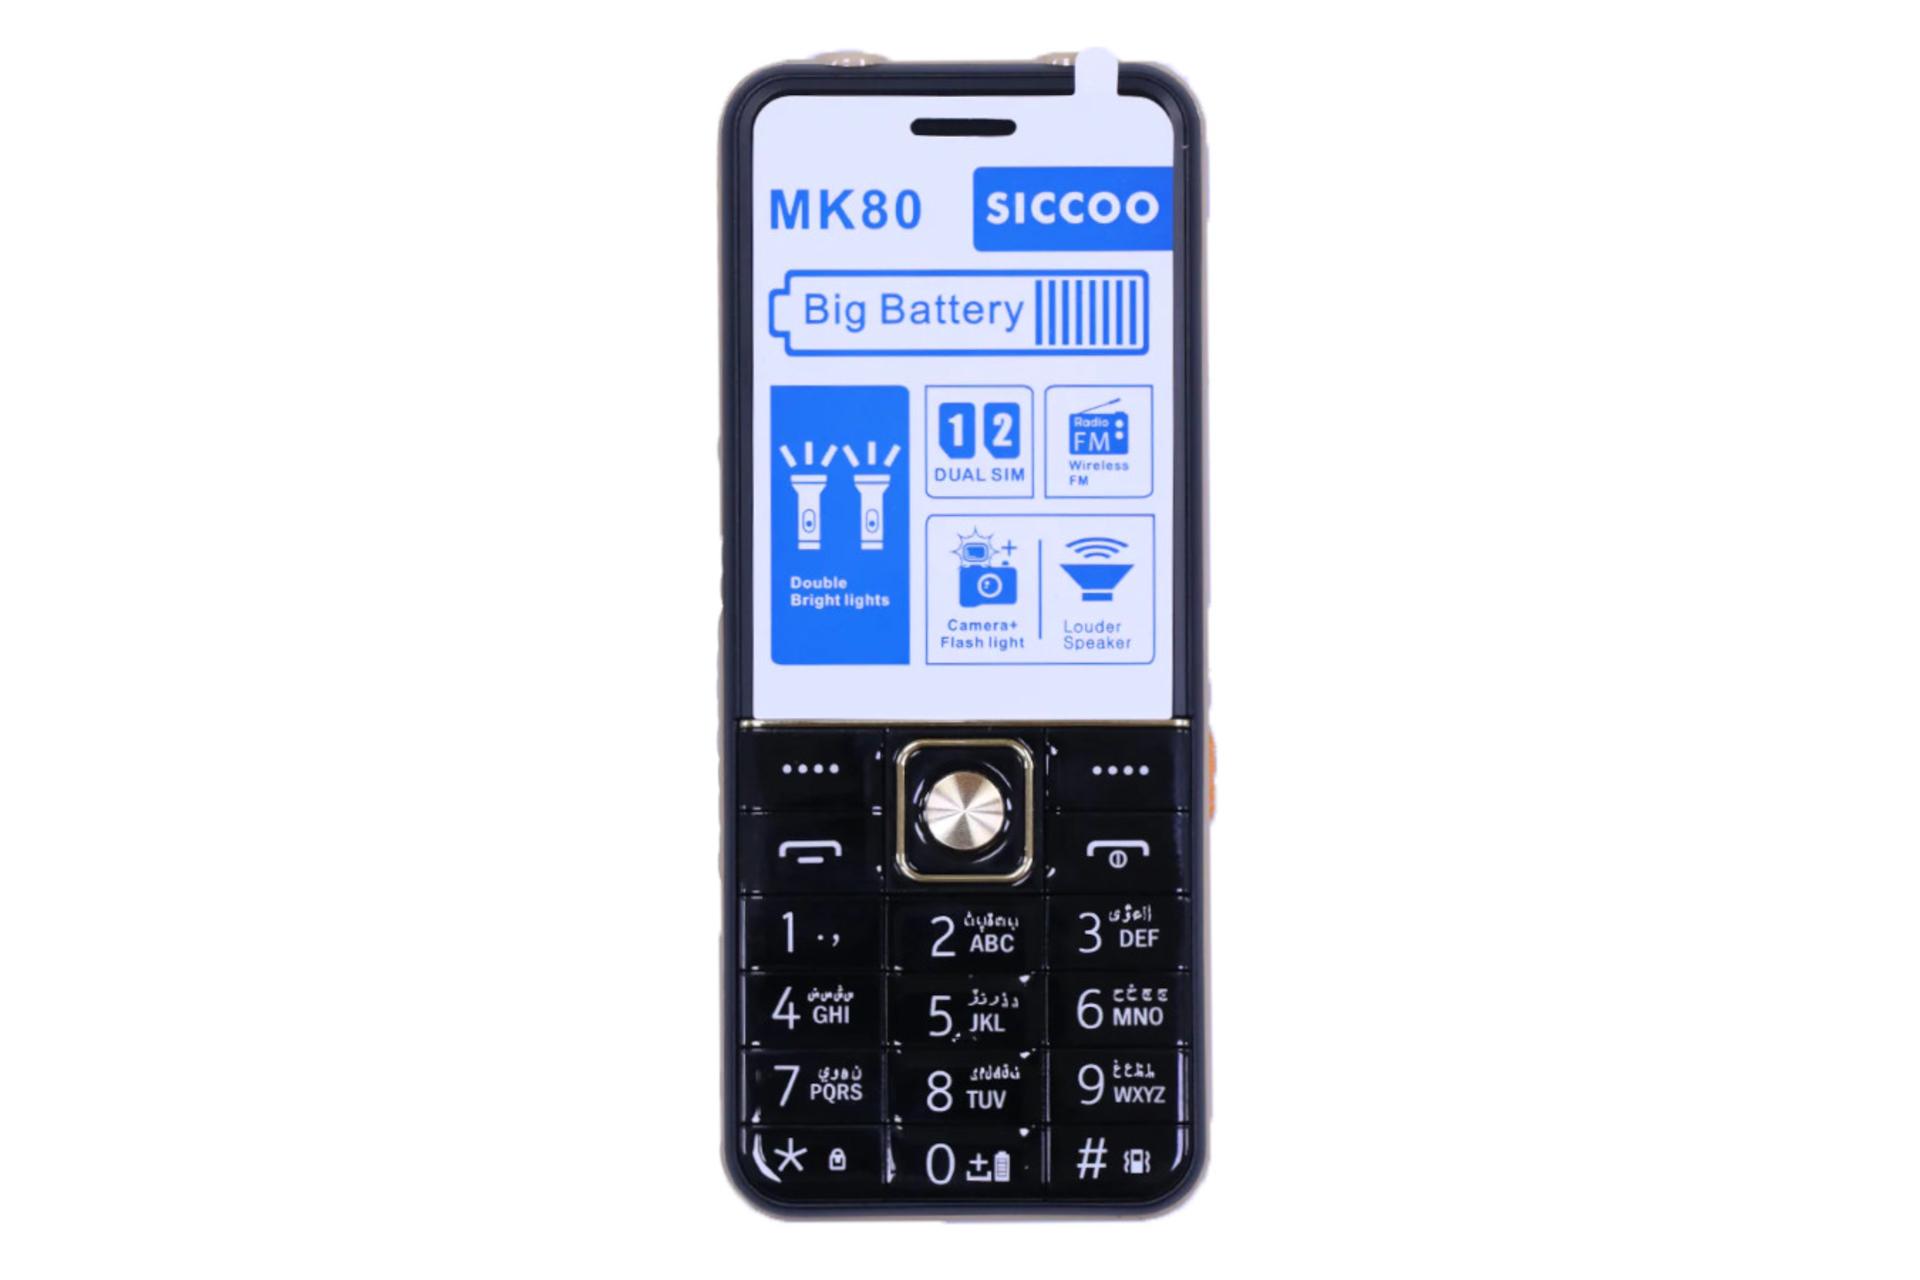 پنل جلو و صفحه کلید گوشی موبایل سیکو SICCOO MK80